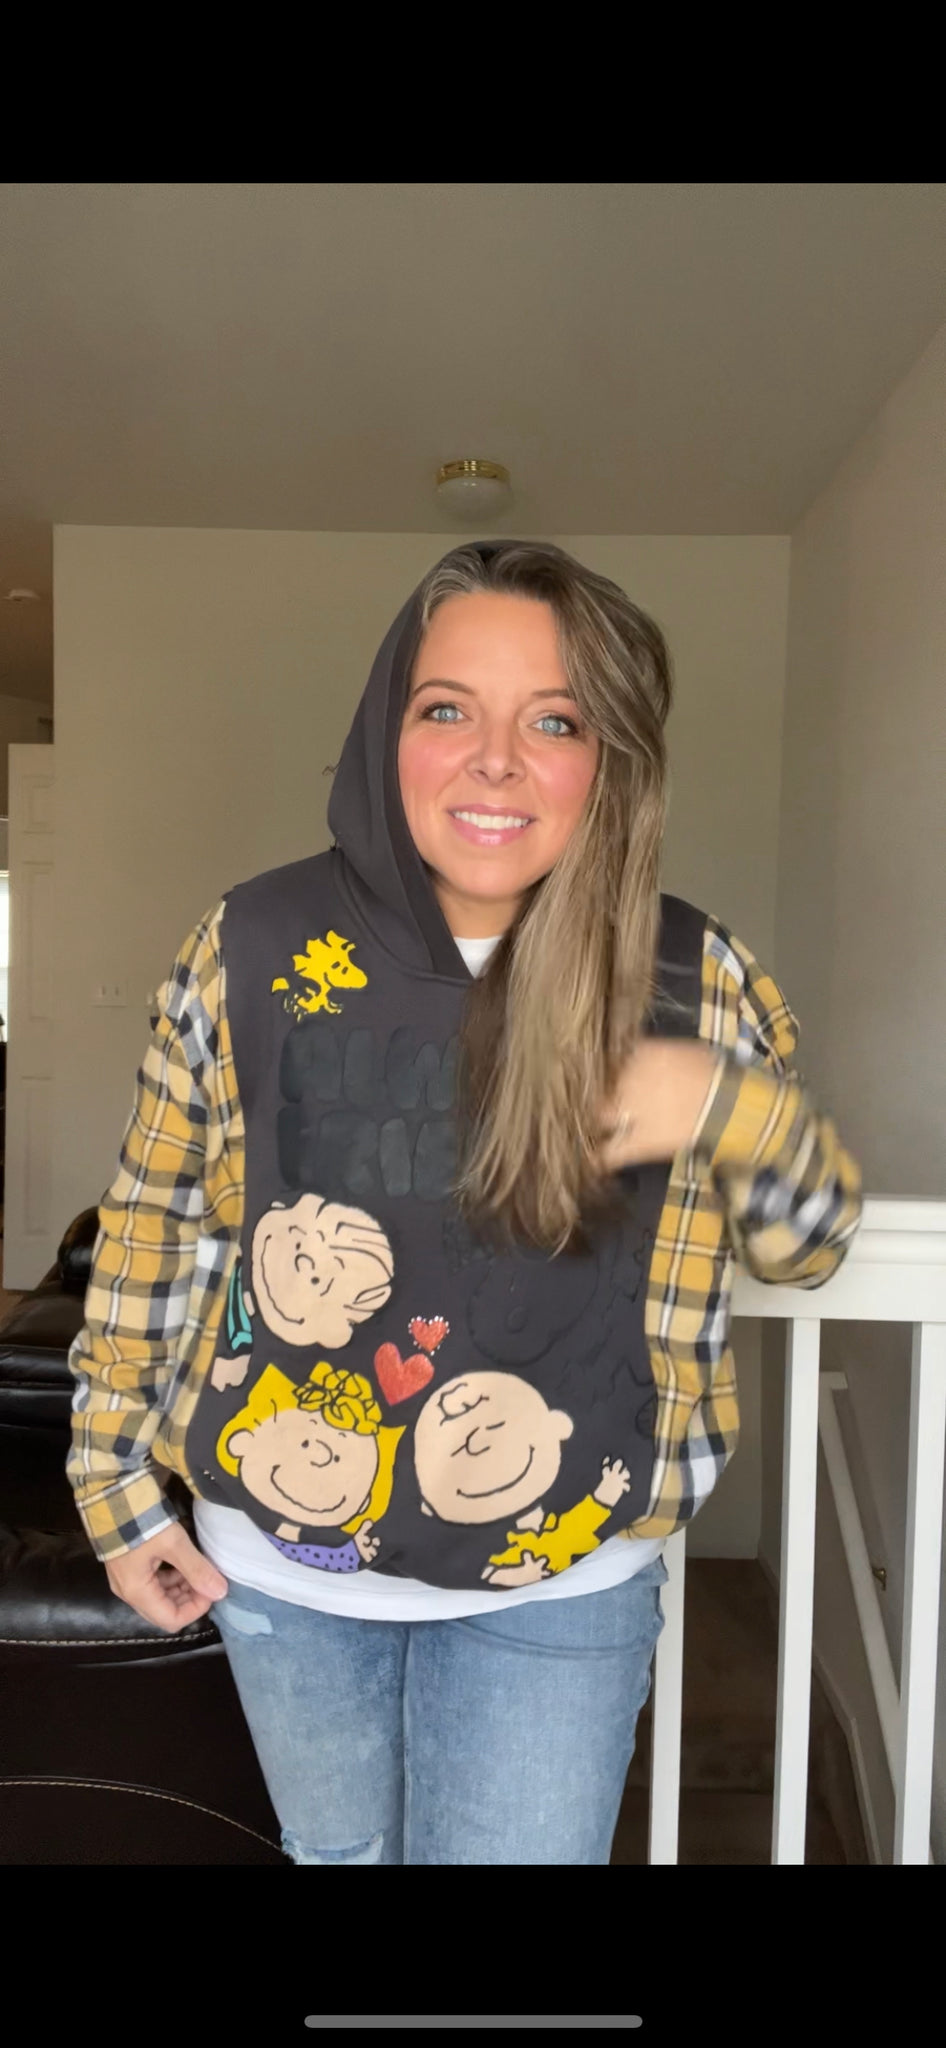 Peanuts Gang Upcycled Sweatshirt